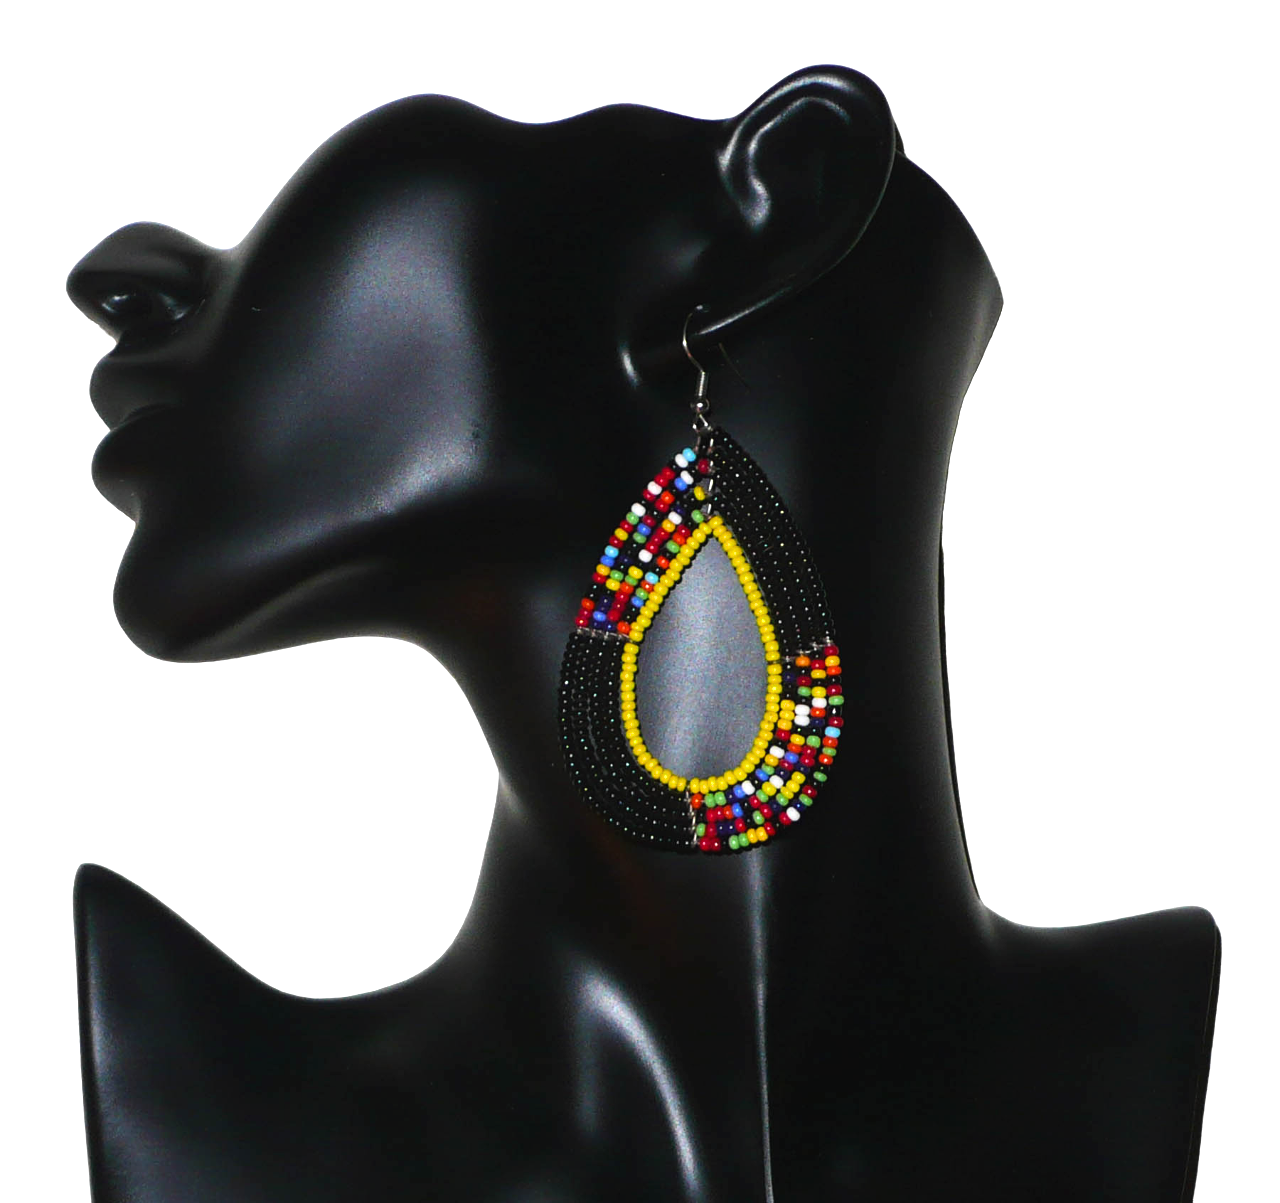 Longues boucles d'oreilles ethniques Massai faites de perles de rocaille noires, jaunes et multicolores montées en forme de gouttes. Elles mesurent 8,5 cm de long et 4,5 cm de large et se portent avec des crochets en acier inoxydable sur des oreilles percées.